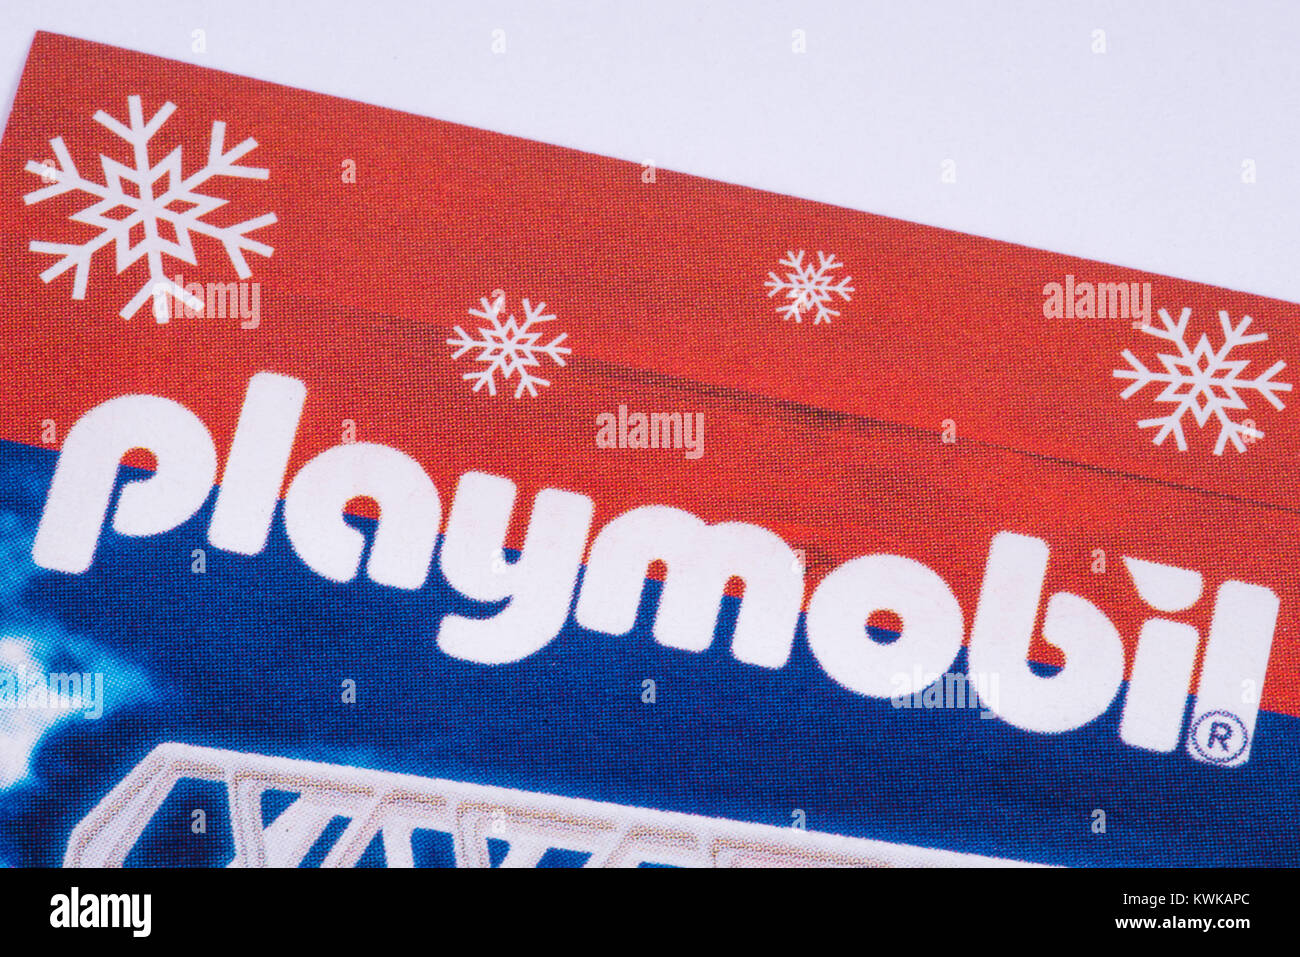 Londres, Reino Unido - 18 DE DICIEMBRE 2017: El Playmobil logo impreso en  un catálogo de juguetes